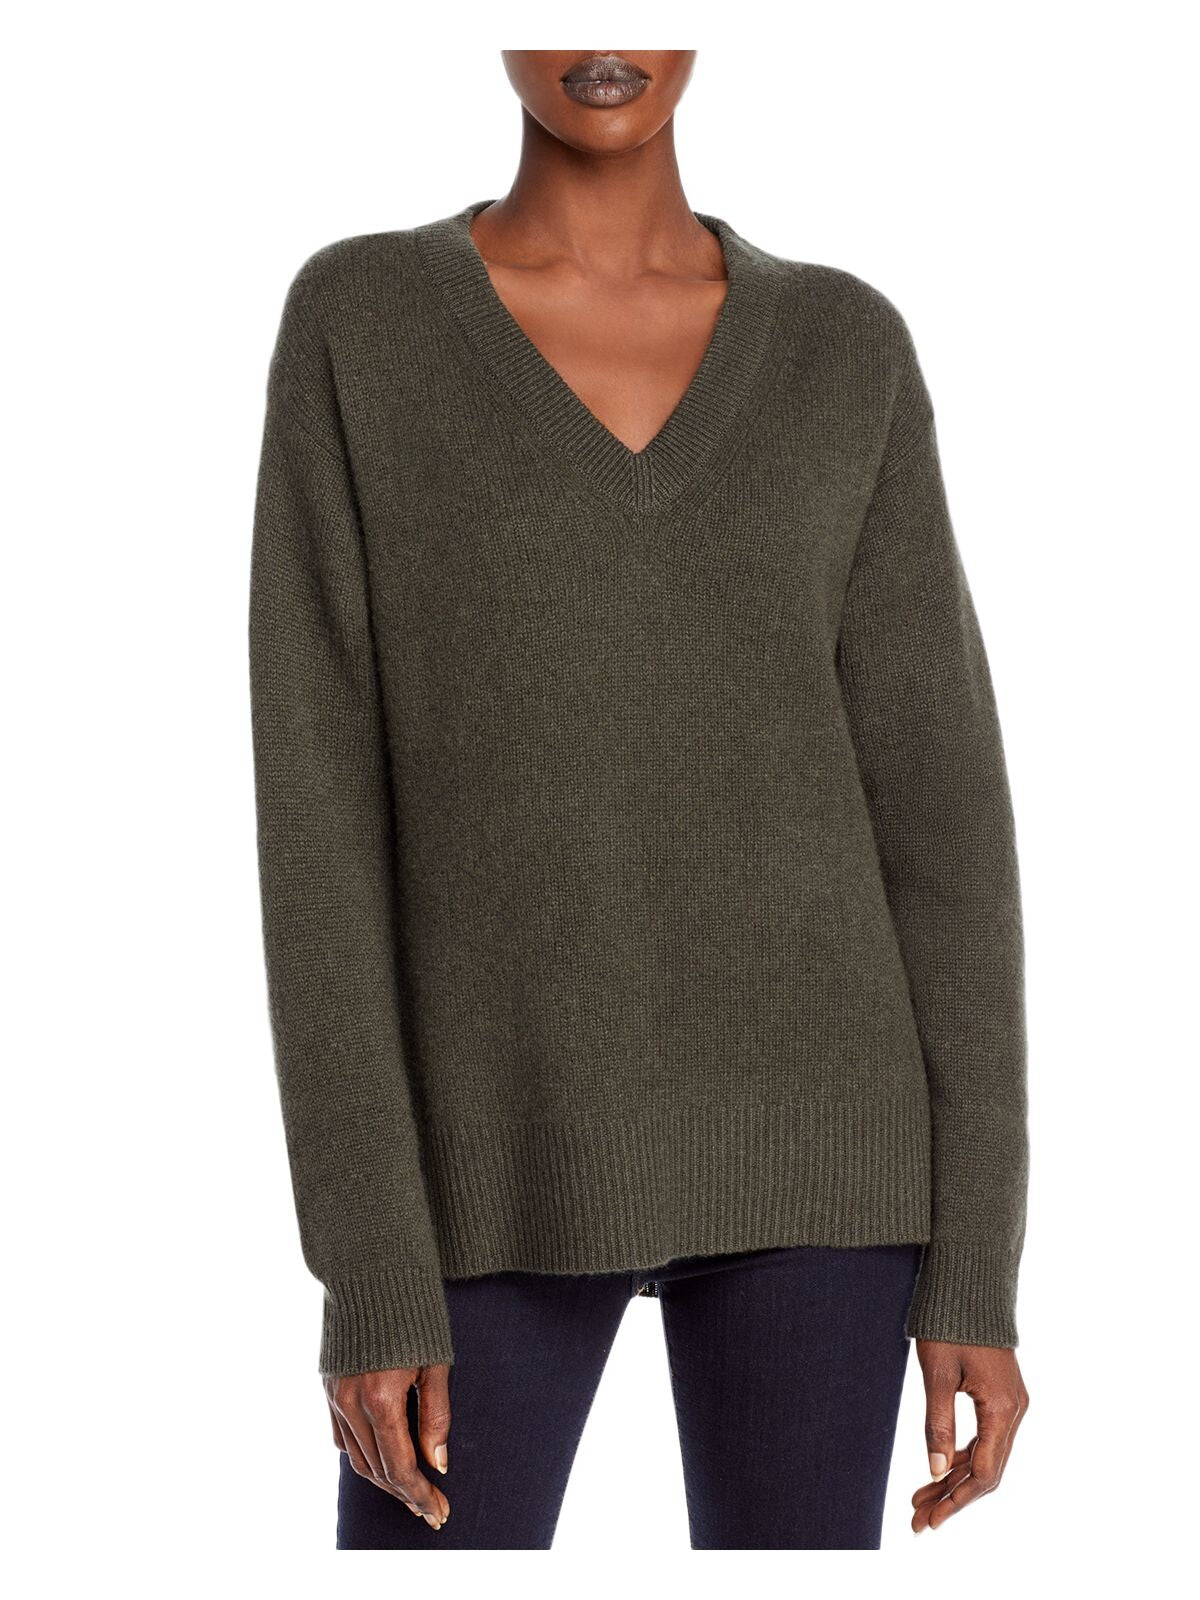 Designer Brand Womens Gray Long Sleeve V Neck Sweater XS